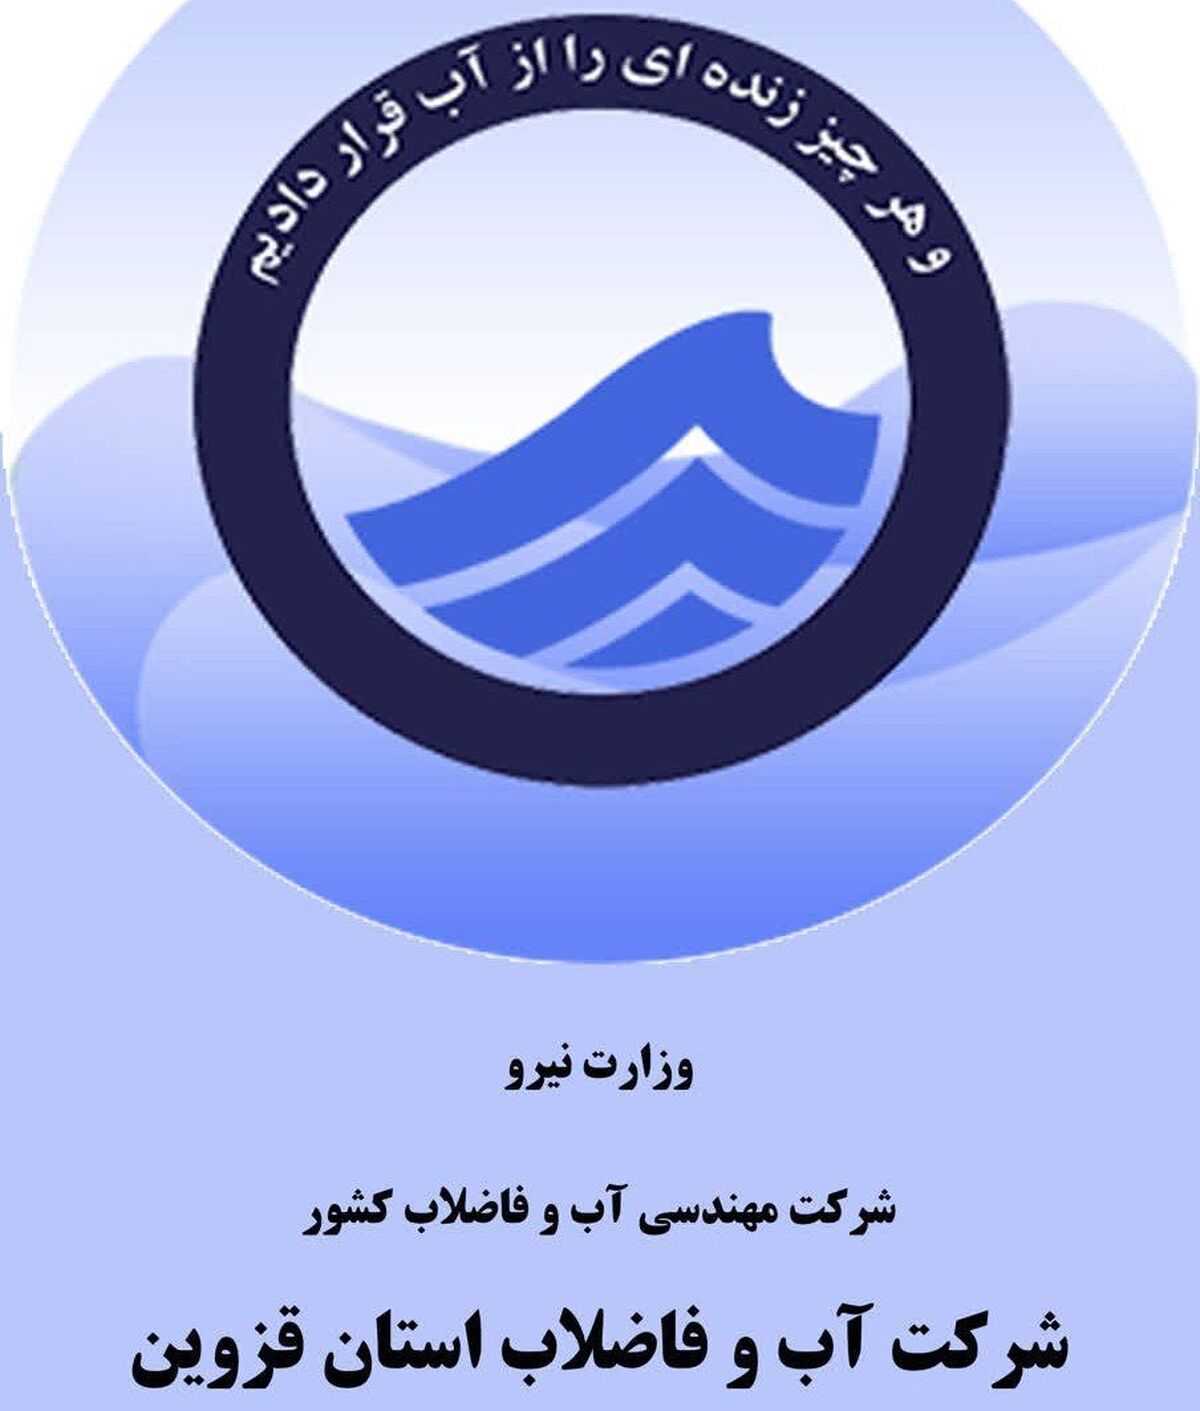 شرکت آب و فاضلاب قزوین رتبه چهارم ارزیابی عملکرد مدیران ارشد وزارت نیرو را کسب کرد